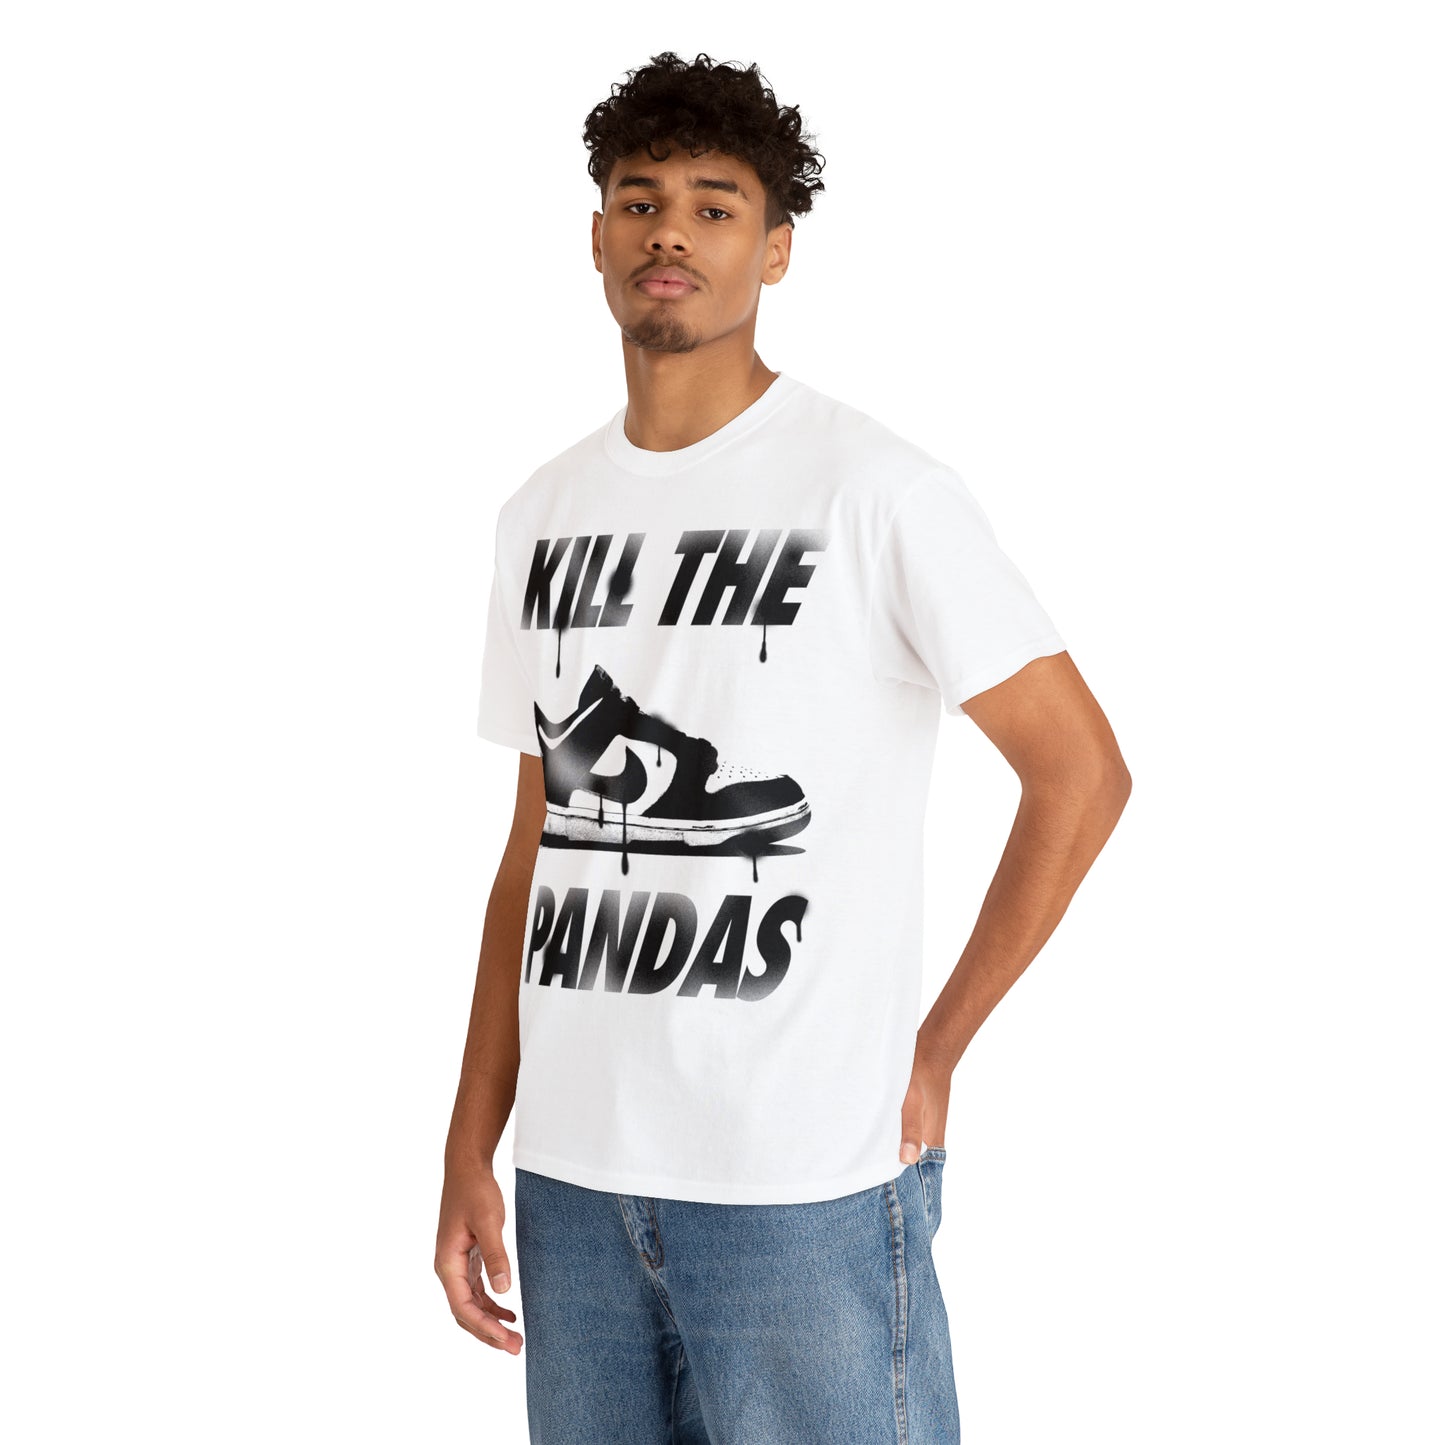 Kill the Pandas t-shirt